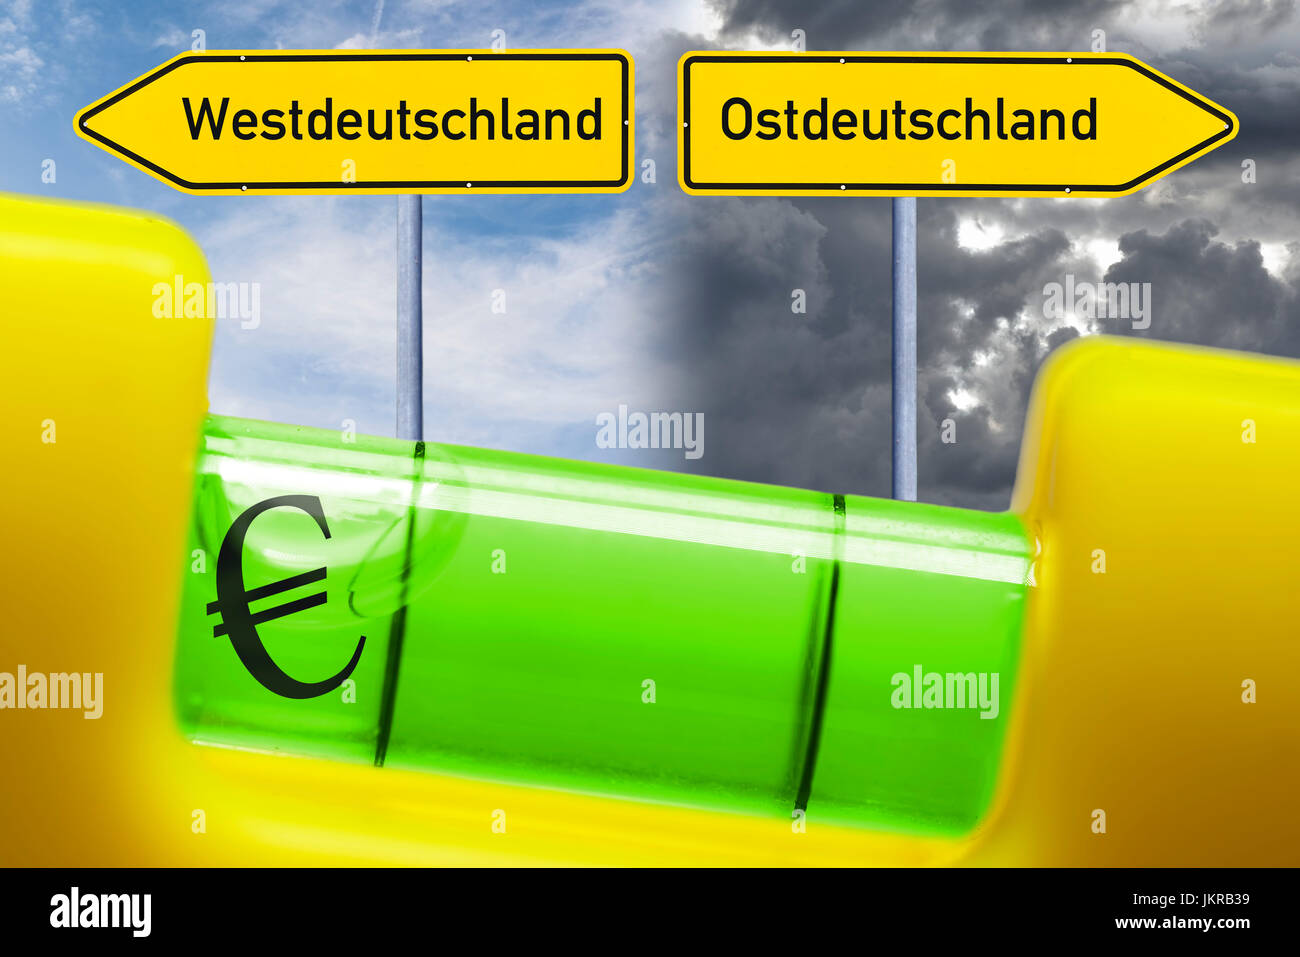 Wasserwaage im Ungleichgewicht, ungleiche Löhne im Westen und Osten Deutschlands, Wasserwaage Im Ungleichgewicht, Ungleiche gewordenes in West-Und O Stockfoto